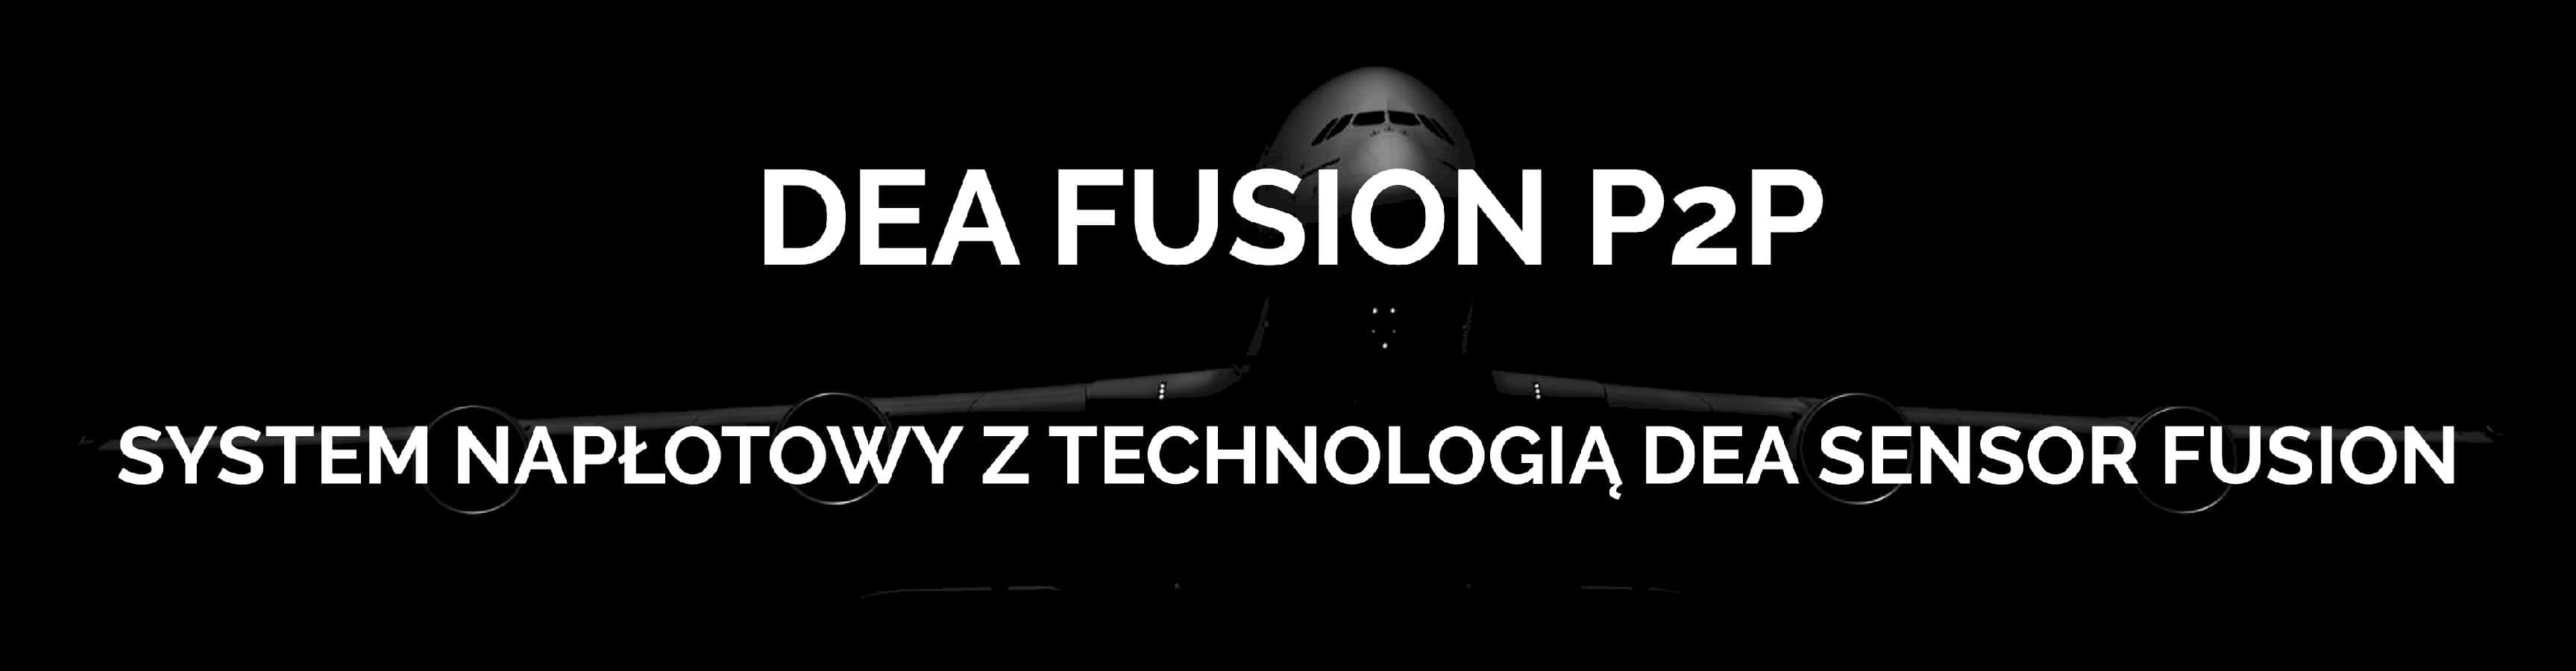 Fusion P2P